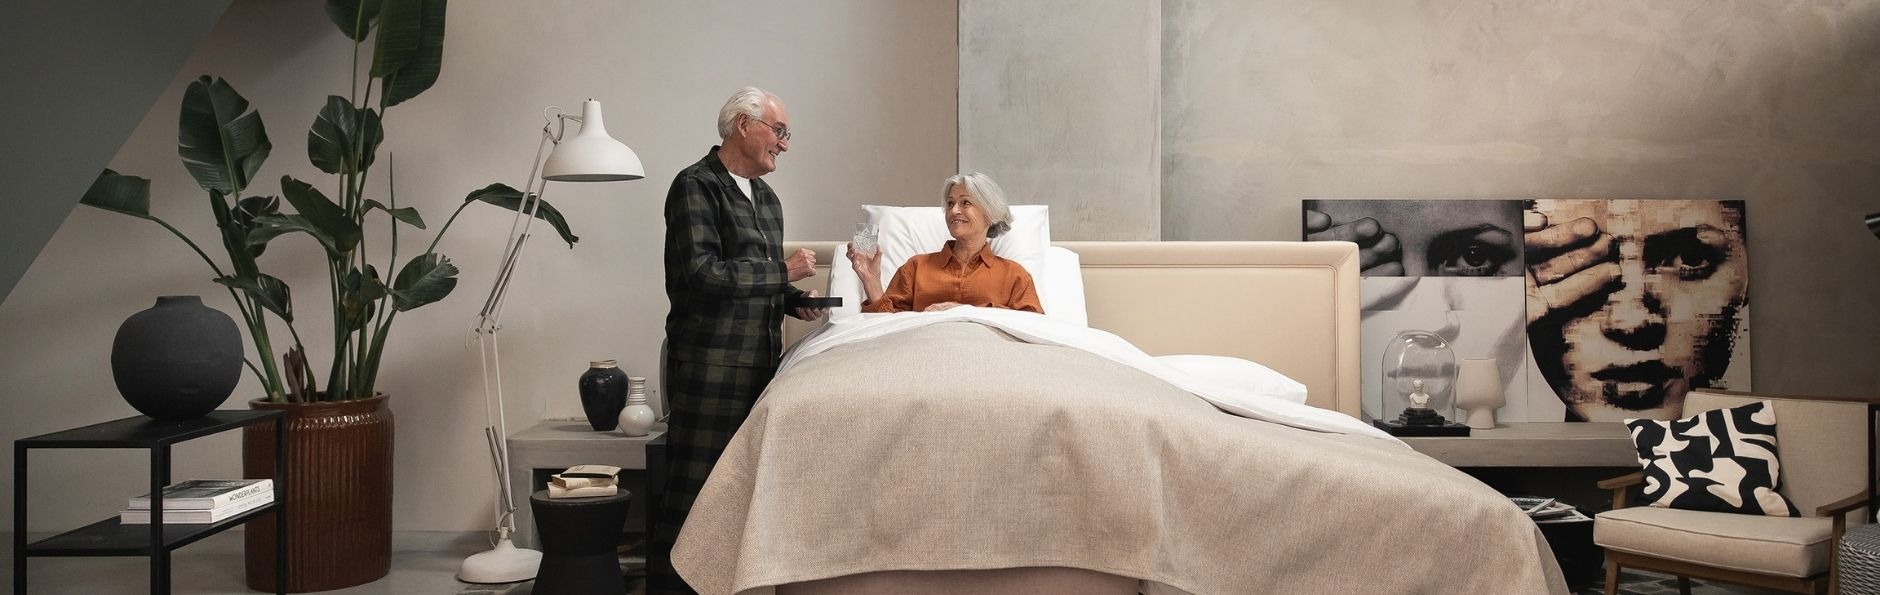 De bedden van Well-Fair kan als zorgbed worden gebruikt, bijvoorbeeld een ms bed.